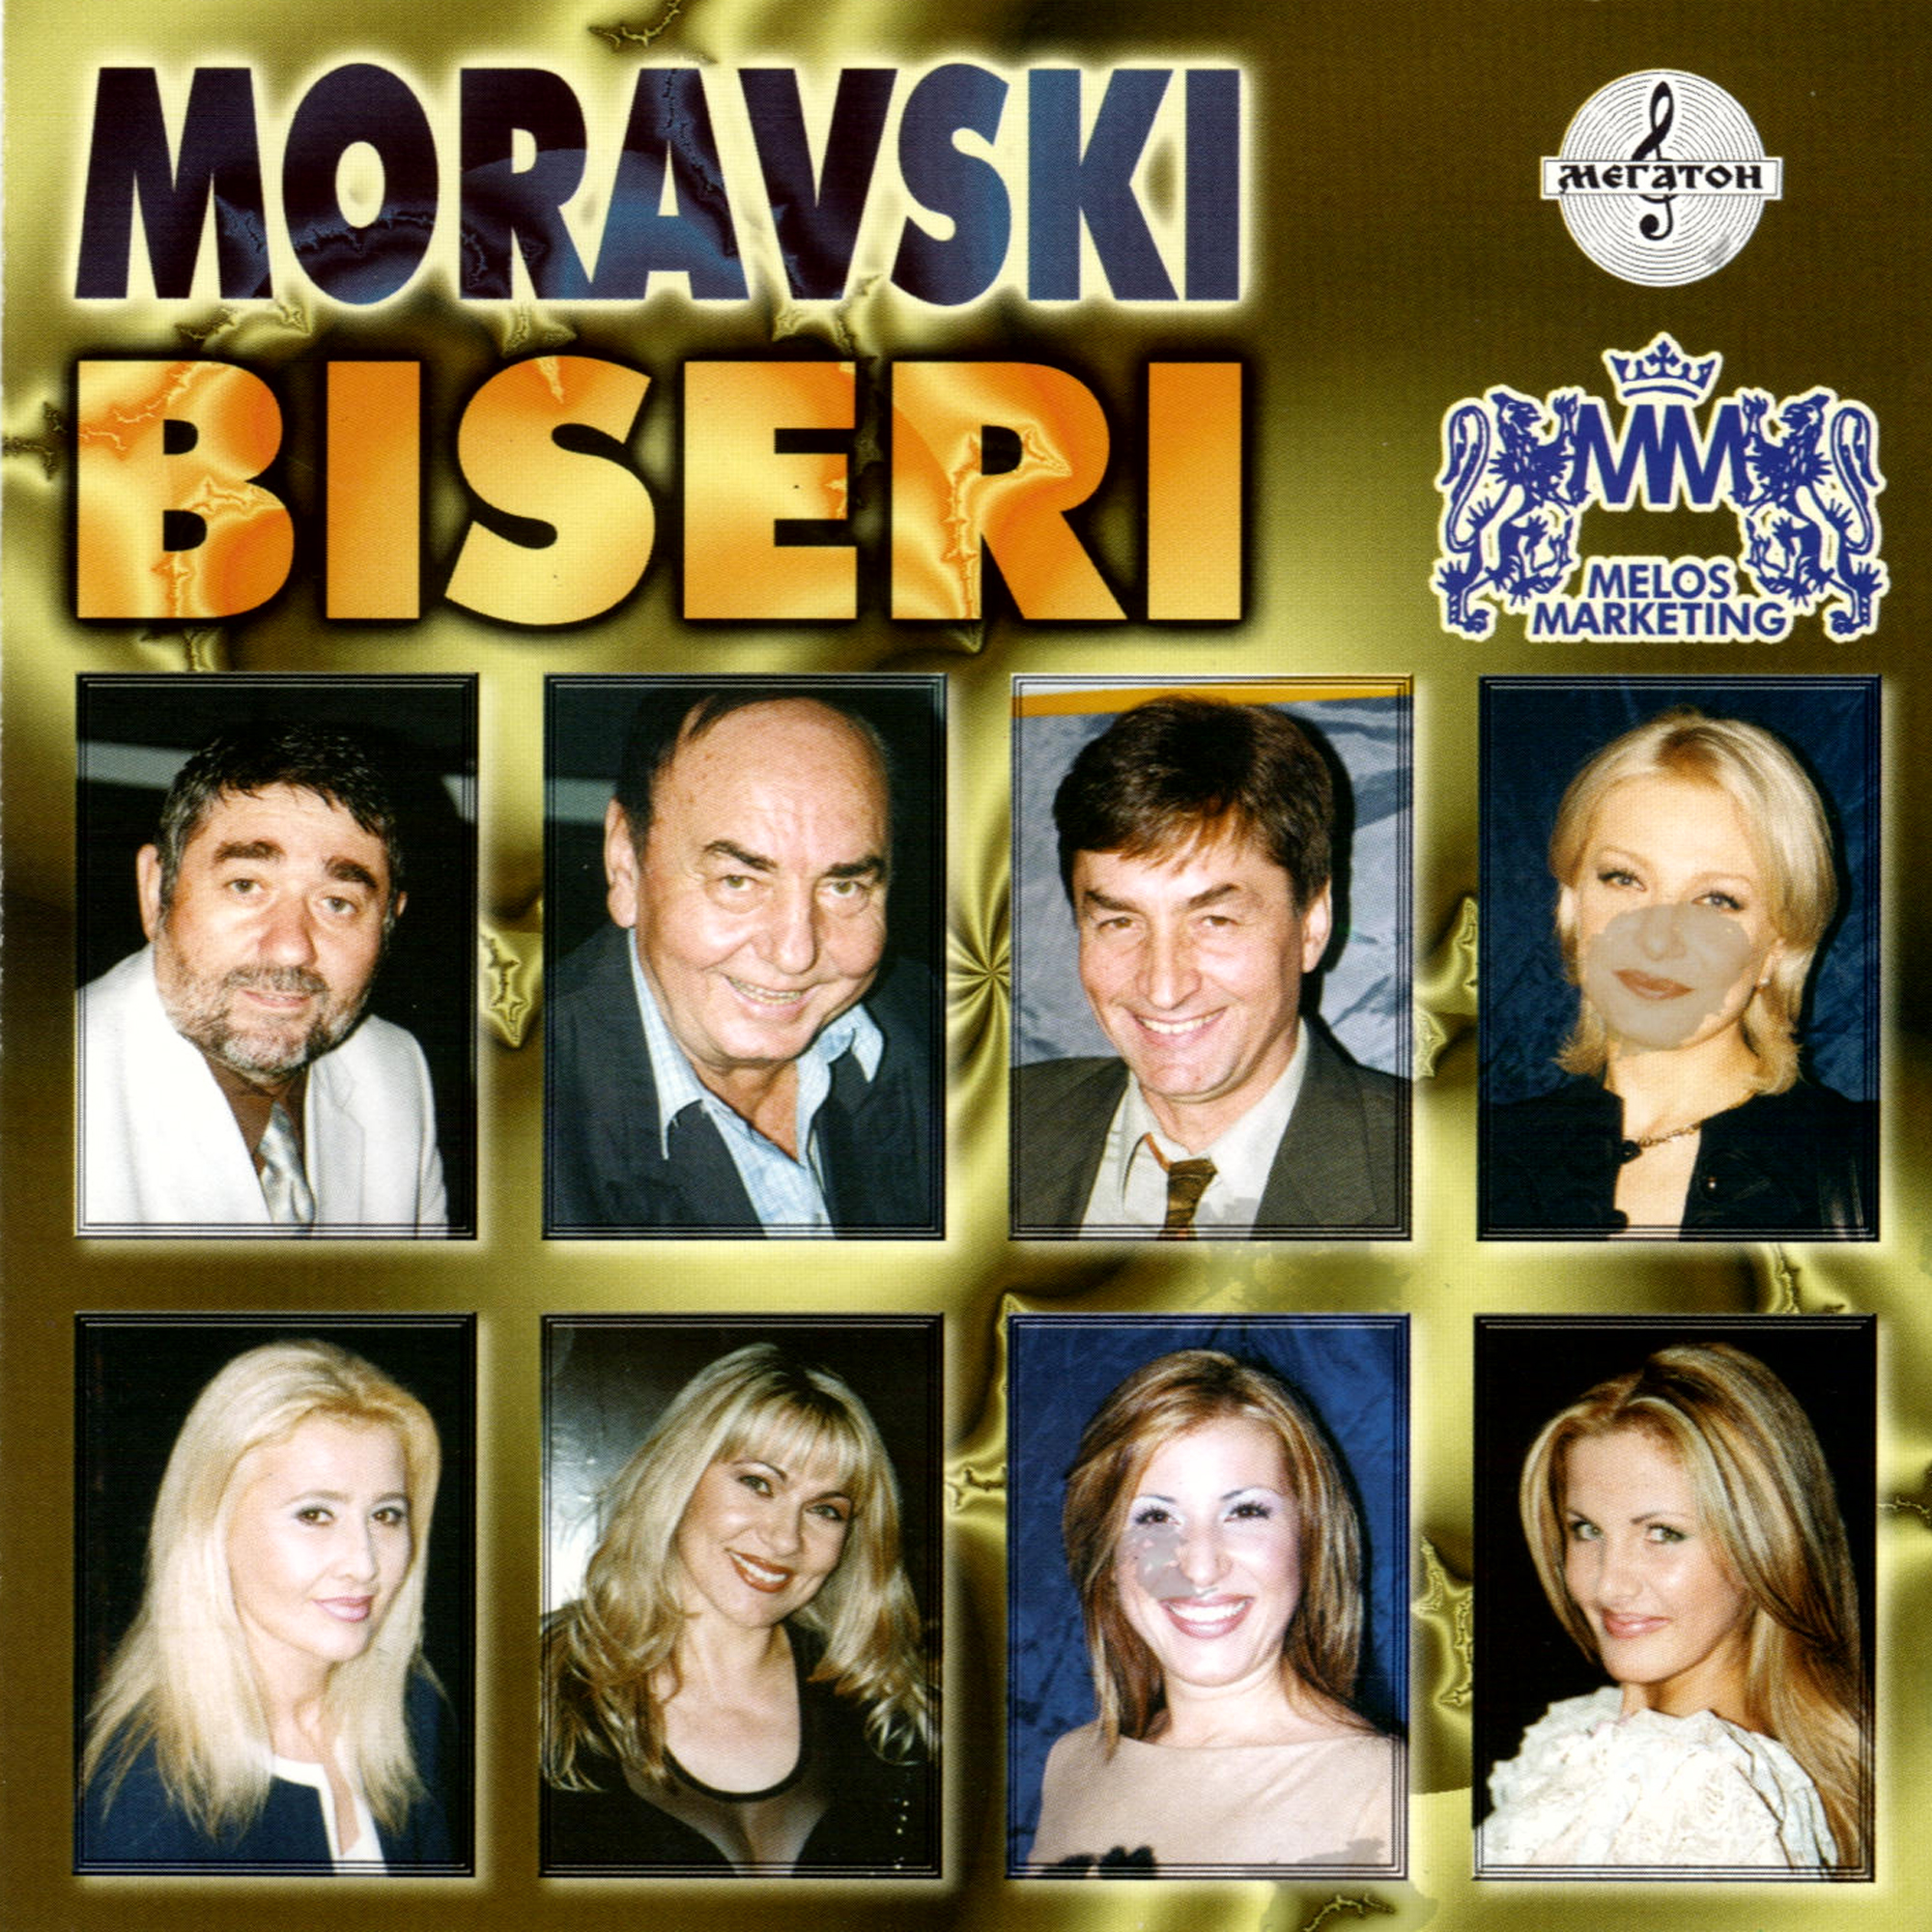 Moravski Biseri